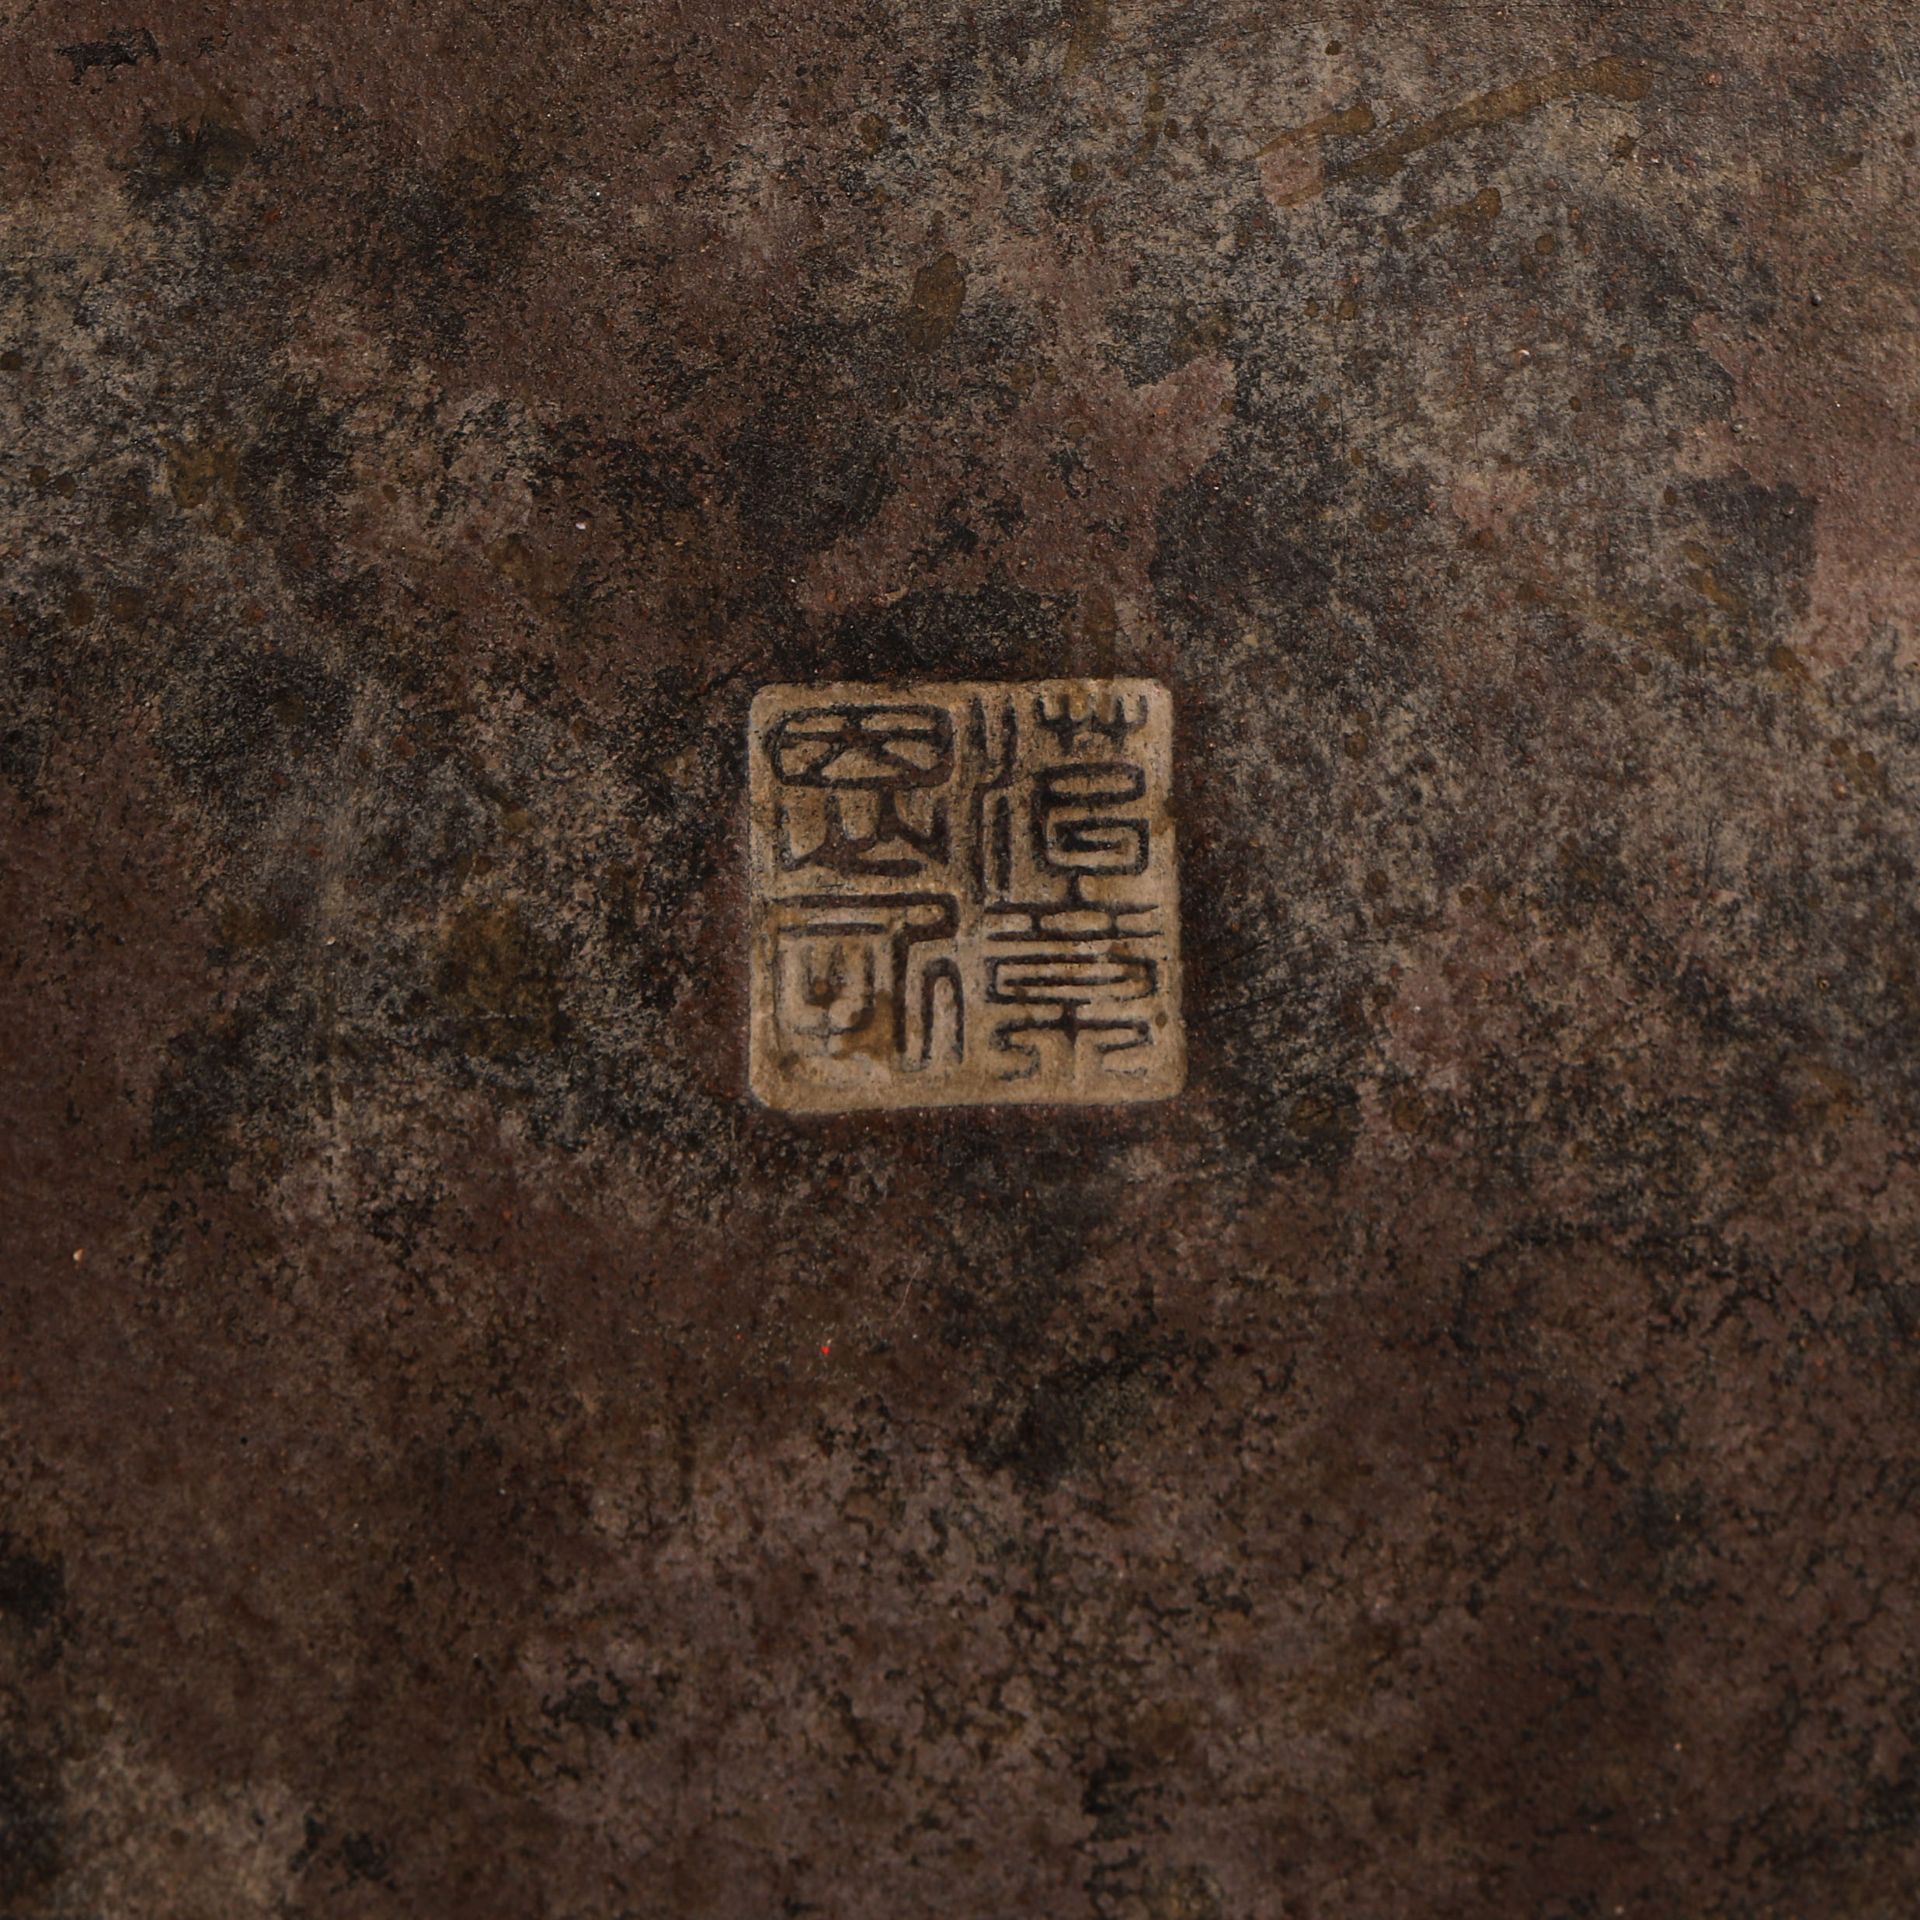 Eighteenth Century Bronze Xuande Furnace - Image 6 of 6